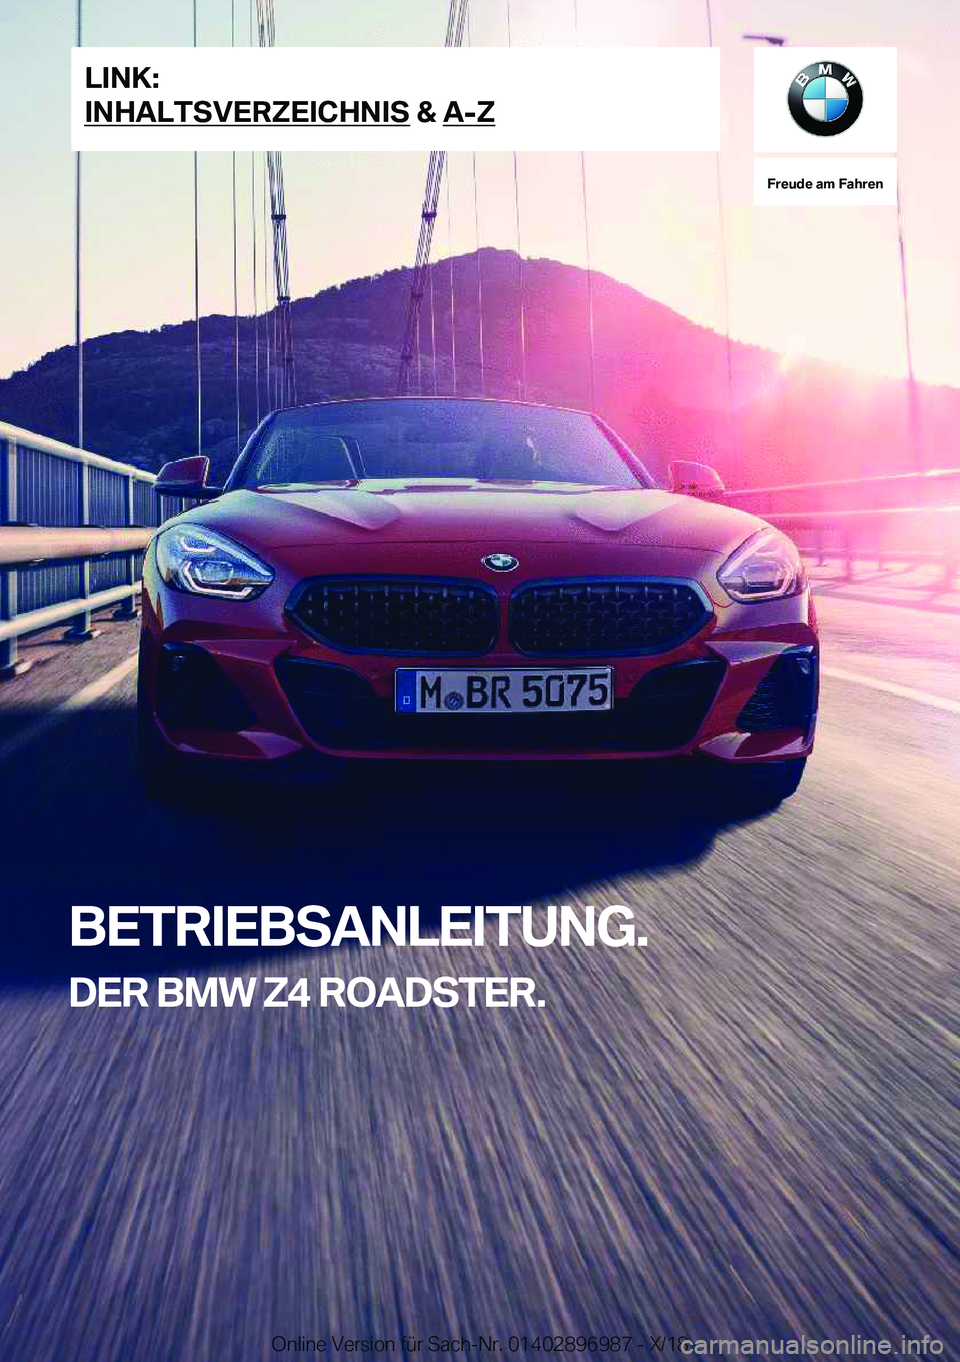 BMW Z4 2019  Betriebsanleitungen (in German) �F�r�e�u�d�e��a�m��F�a�h�r�e�n
�B�E�T�R�I�E�B�S�A�N�L�E�I�T�U�N�G�.�D�E�R��B�M�W��Z�4��R�O�A�D�S�T�E�R�.�L�I�N�K�:
�I�N�H�A�L�T�S�V�E�R�Z�E�I�C�H�N�I�S��&��A�-�Z�O�n�l�i�n�e��V�e�r�s�i�o�n��f